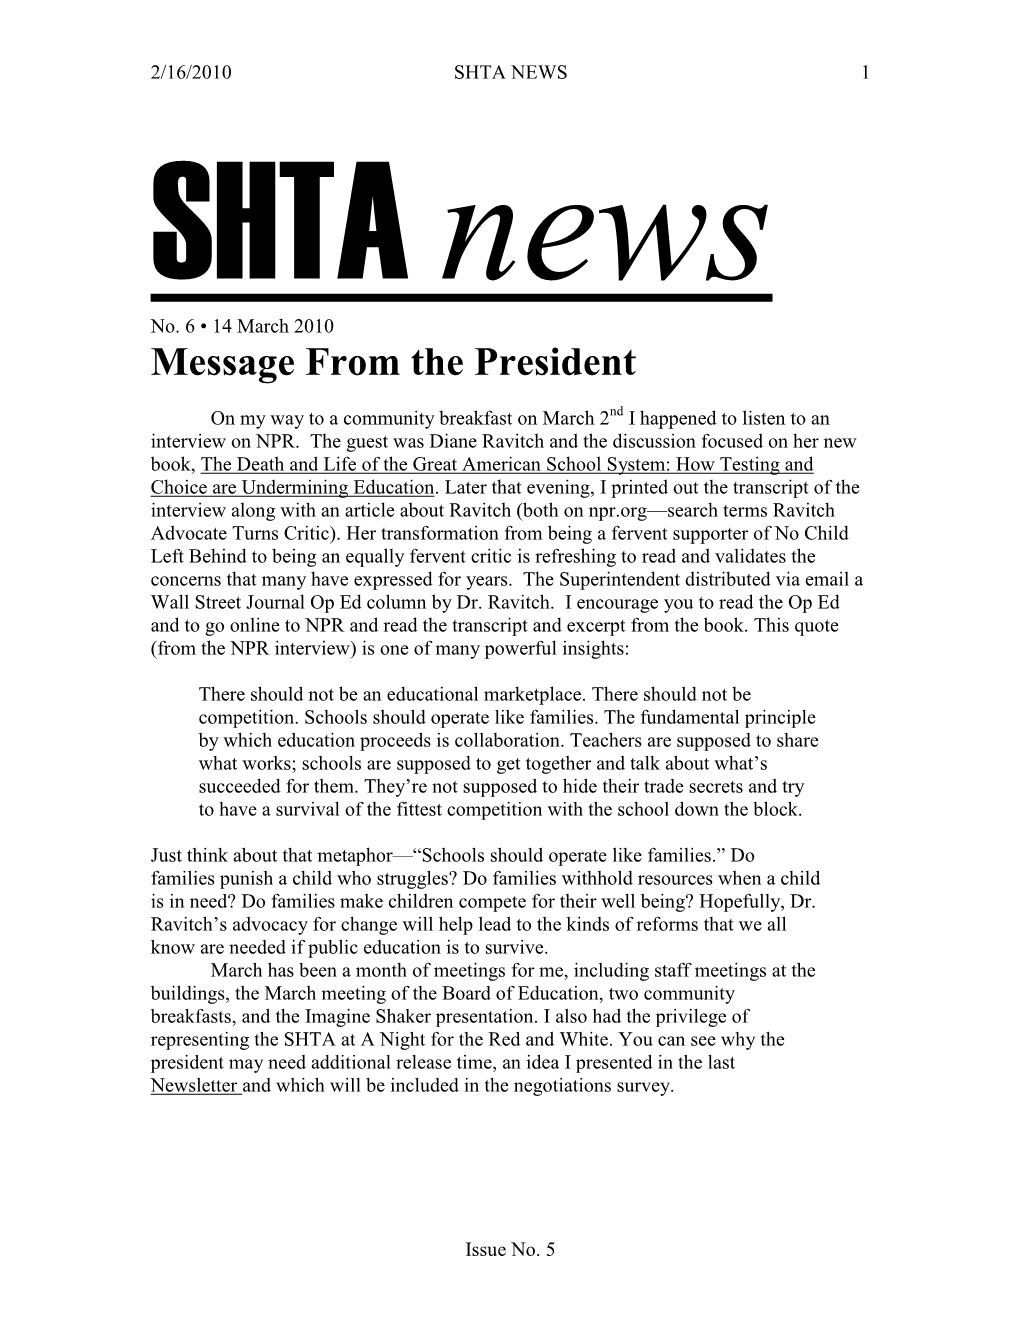 SHTA NEWS 1 SHTA News No